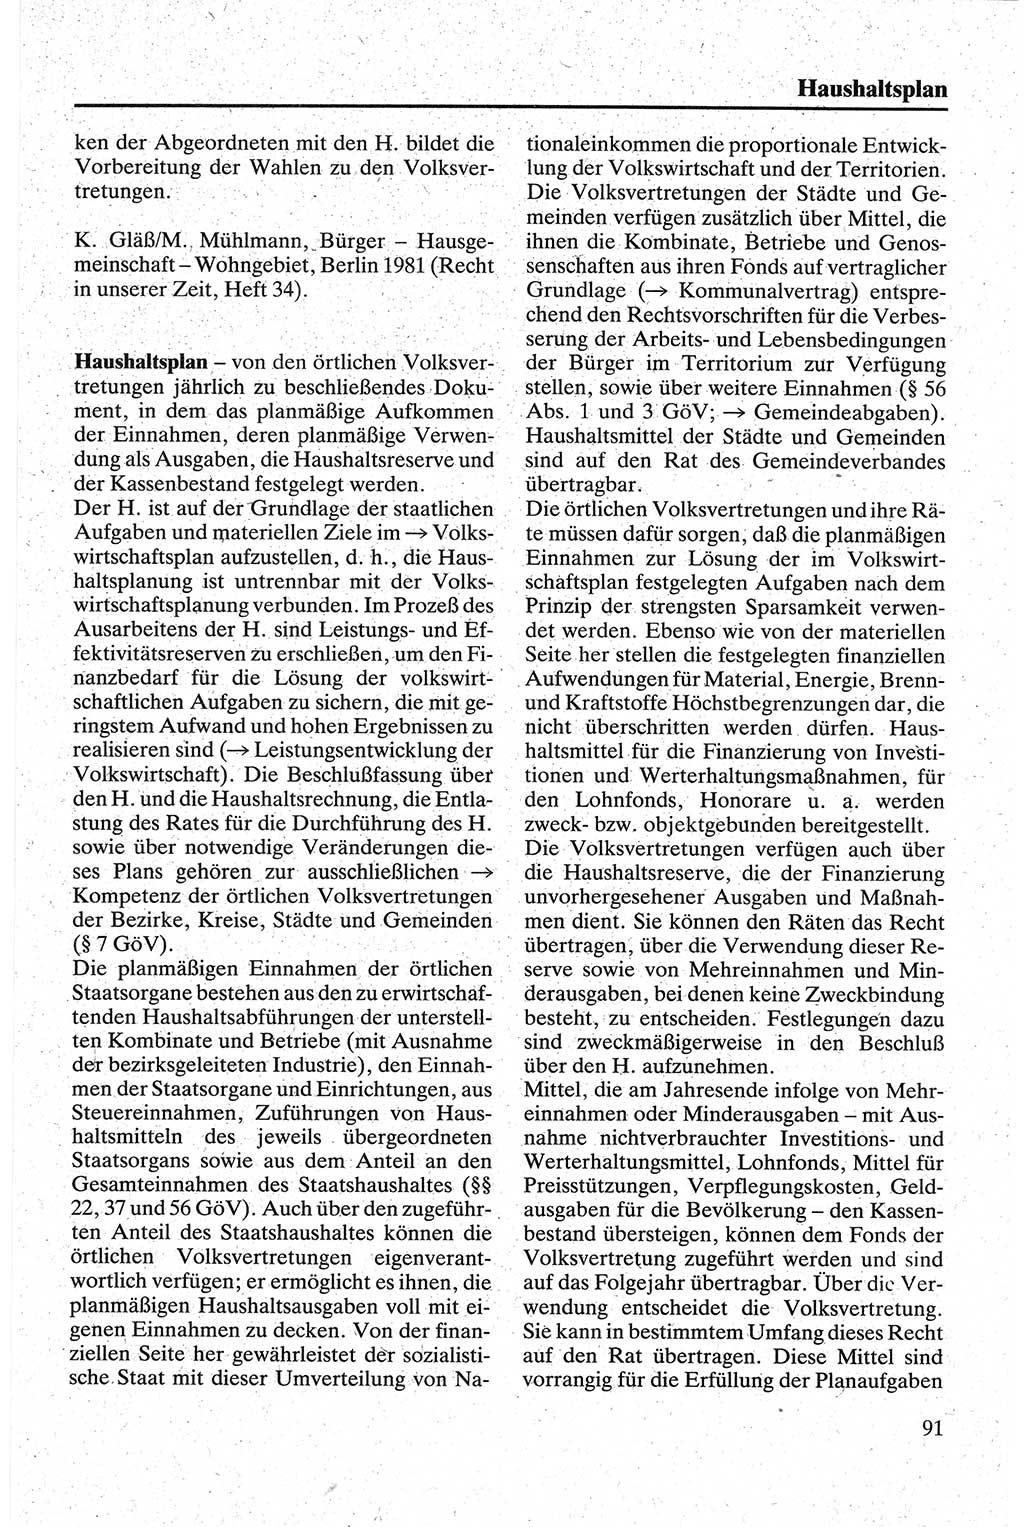 Handbuch für den Abgeordneten [Deutsche Demokratische Republik (DDR)] 1984, Seite 91 (Hb. Abg. DDR 1984, S. 91)